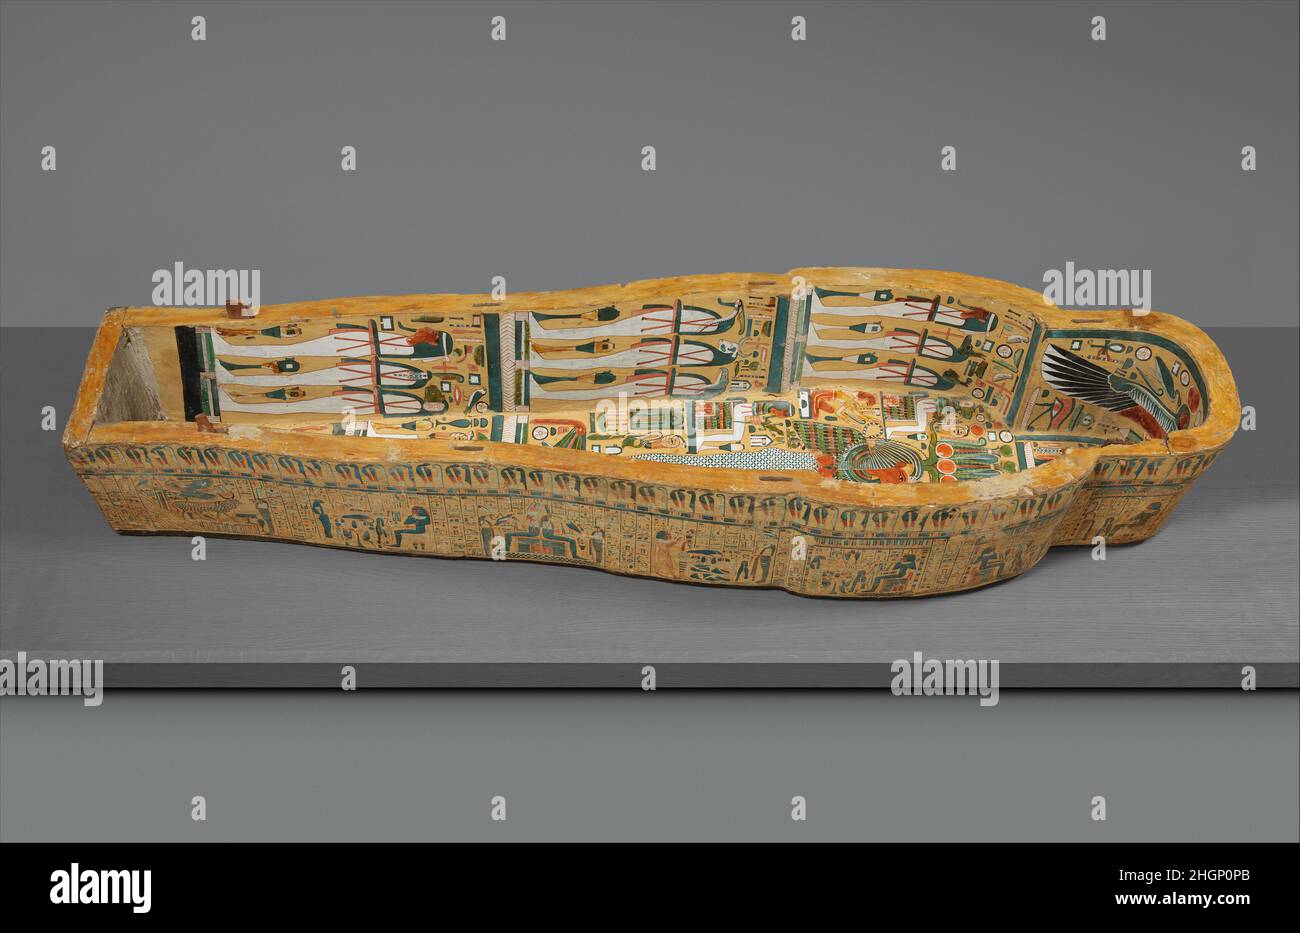 Schachtel mit einem Anthropoidenkaffin ca. 1070–945 v. Chr. Dritte Zwischenperiode die Figuren auf dem Inneren dieses fein dekorierten Holzsarges aus der Dritten Zwischenperiode sind in einem detailreichen, farbenfrohen Stil gemalt. In der Mitte des Kasteninneren steht der vergötterte König Amenhotep I in der Gestalt des mumiformen Osiris, der von einem Priester in einer Pantherhaut, einem menschköpfigen BA-Vogel (vermutlich dem Geist des Sargbesitzers) und einer kauernden trauernden Frau besucht wird. Begräbnis-Vignetten, einschließlich der Verstorbenen (in einigen Fällen männlich und in anderen weiblich) vor verschiedenen Göttern und Bildern von Hatho Stockfoto